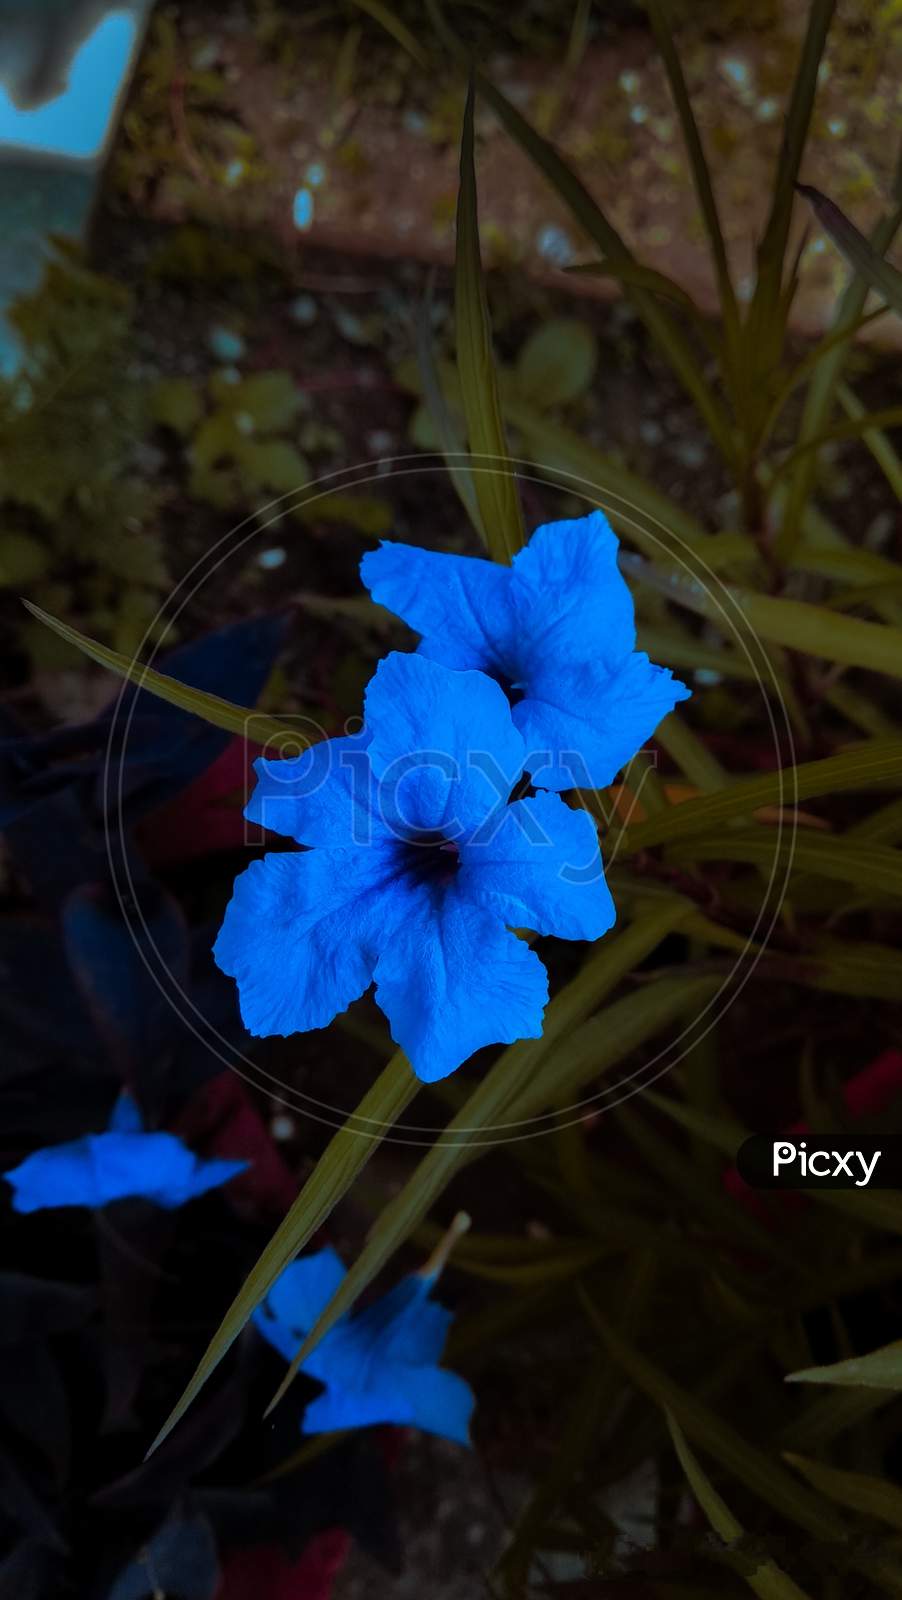 A blue flower